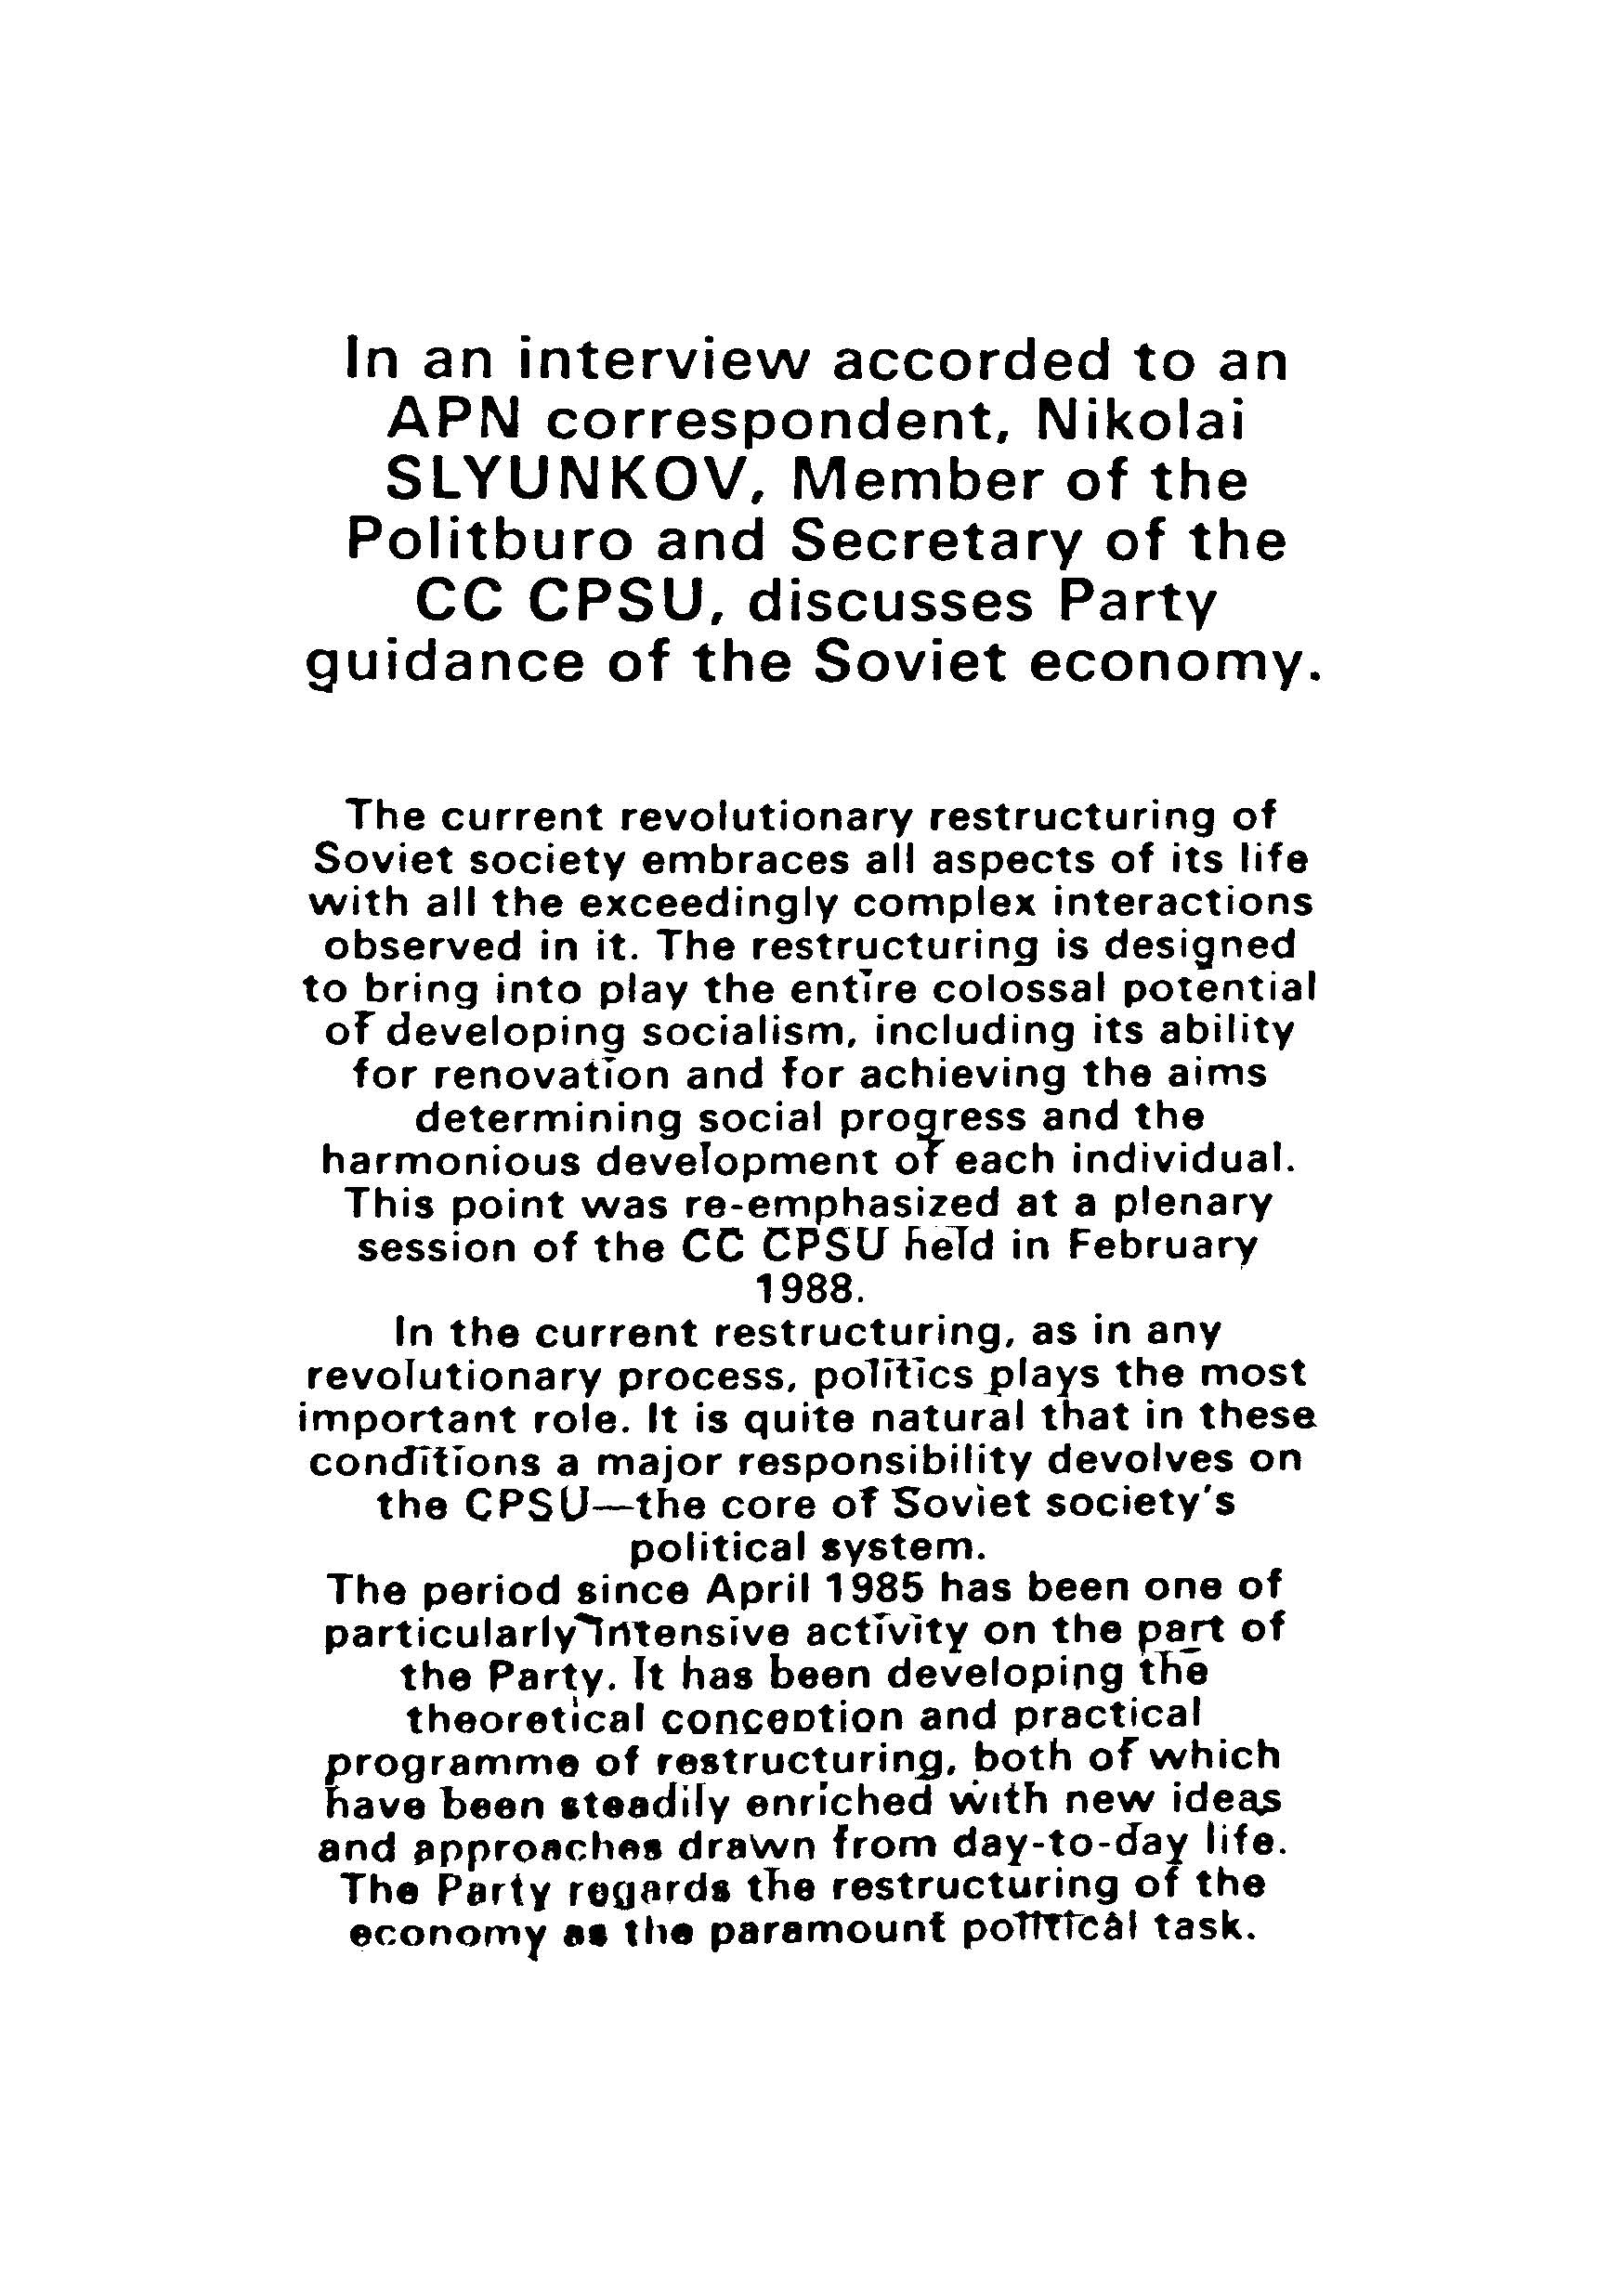 APN correspondent, nikolai slyunkov,member of the CC CPSU, discusscs party....